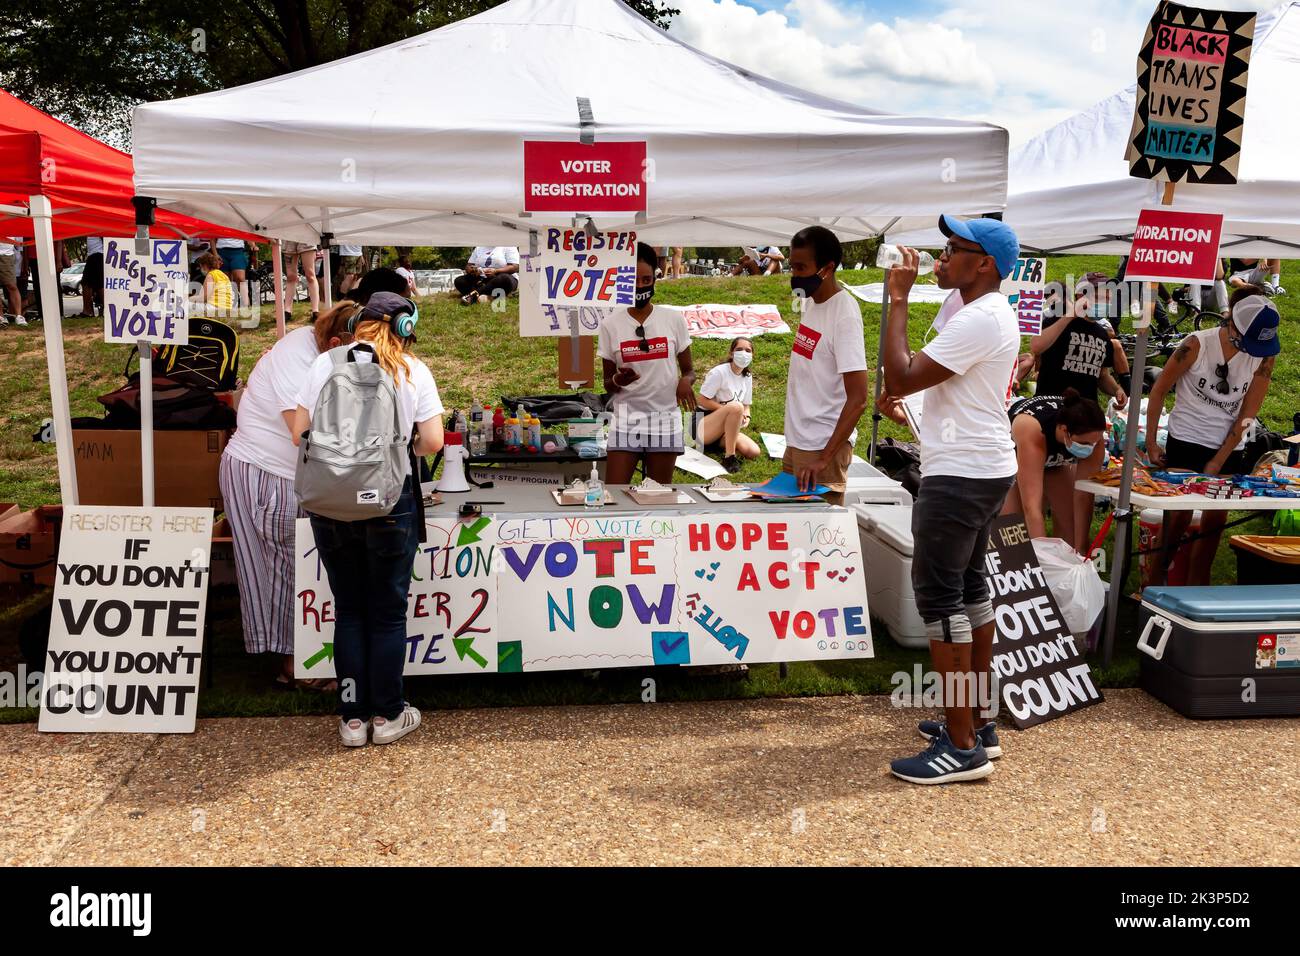 Les bénévoles enregistrent les gens pour voter pendant Demand DC, un rassemblement contre le racisme et une marche. L'événement a été une collaboration des organisations locales de justice raciale à la suite du meurtre de George Floyd. Banque D'Images